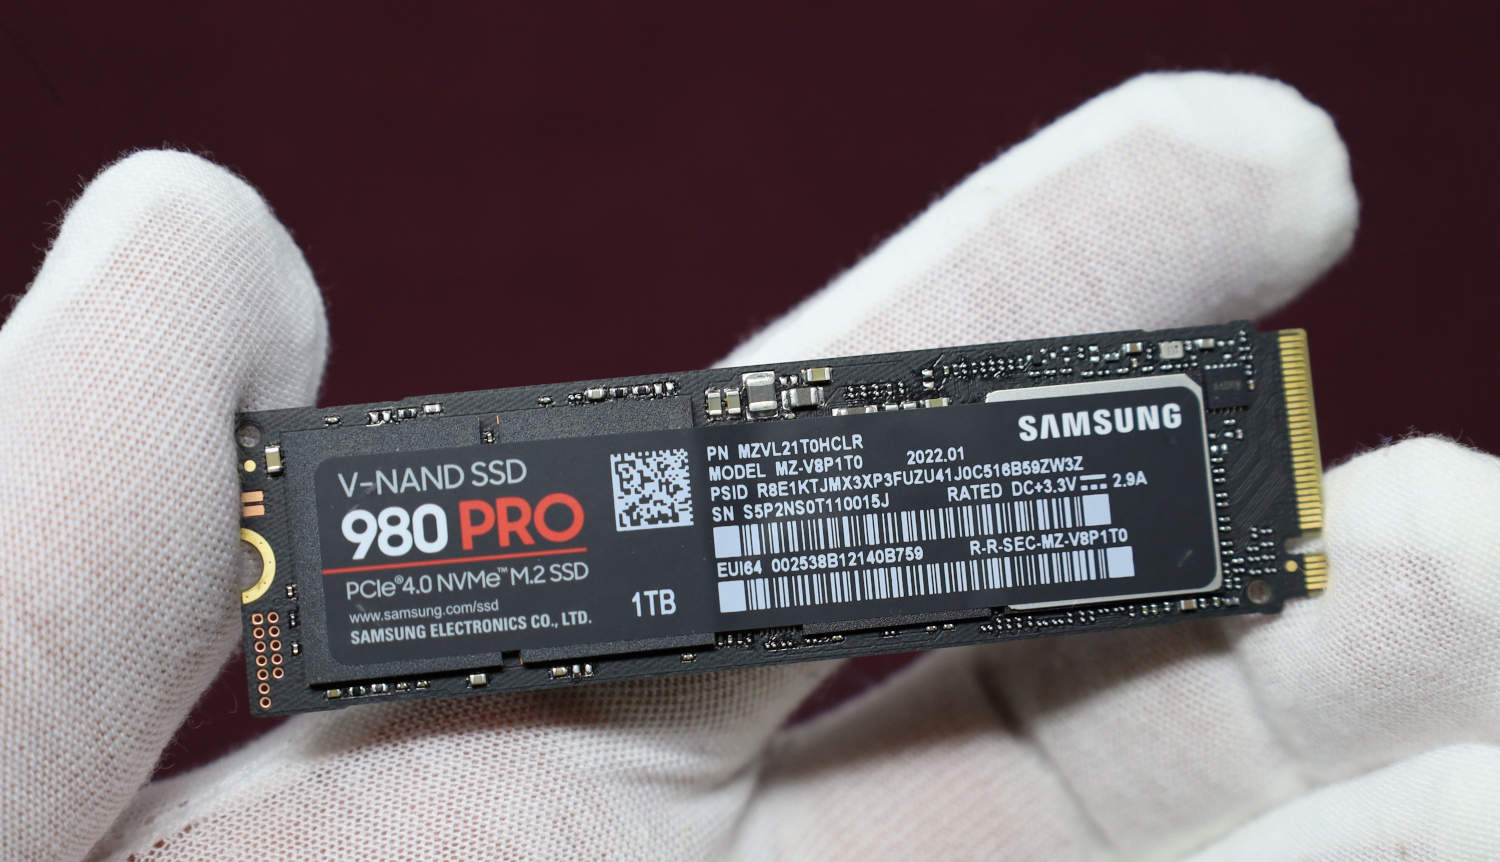 Samsung 980 SSD - 1TB - PCI-E 3.0 - M.2 2280